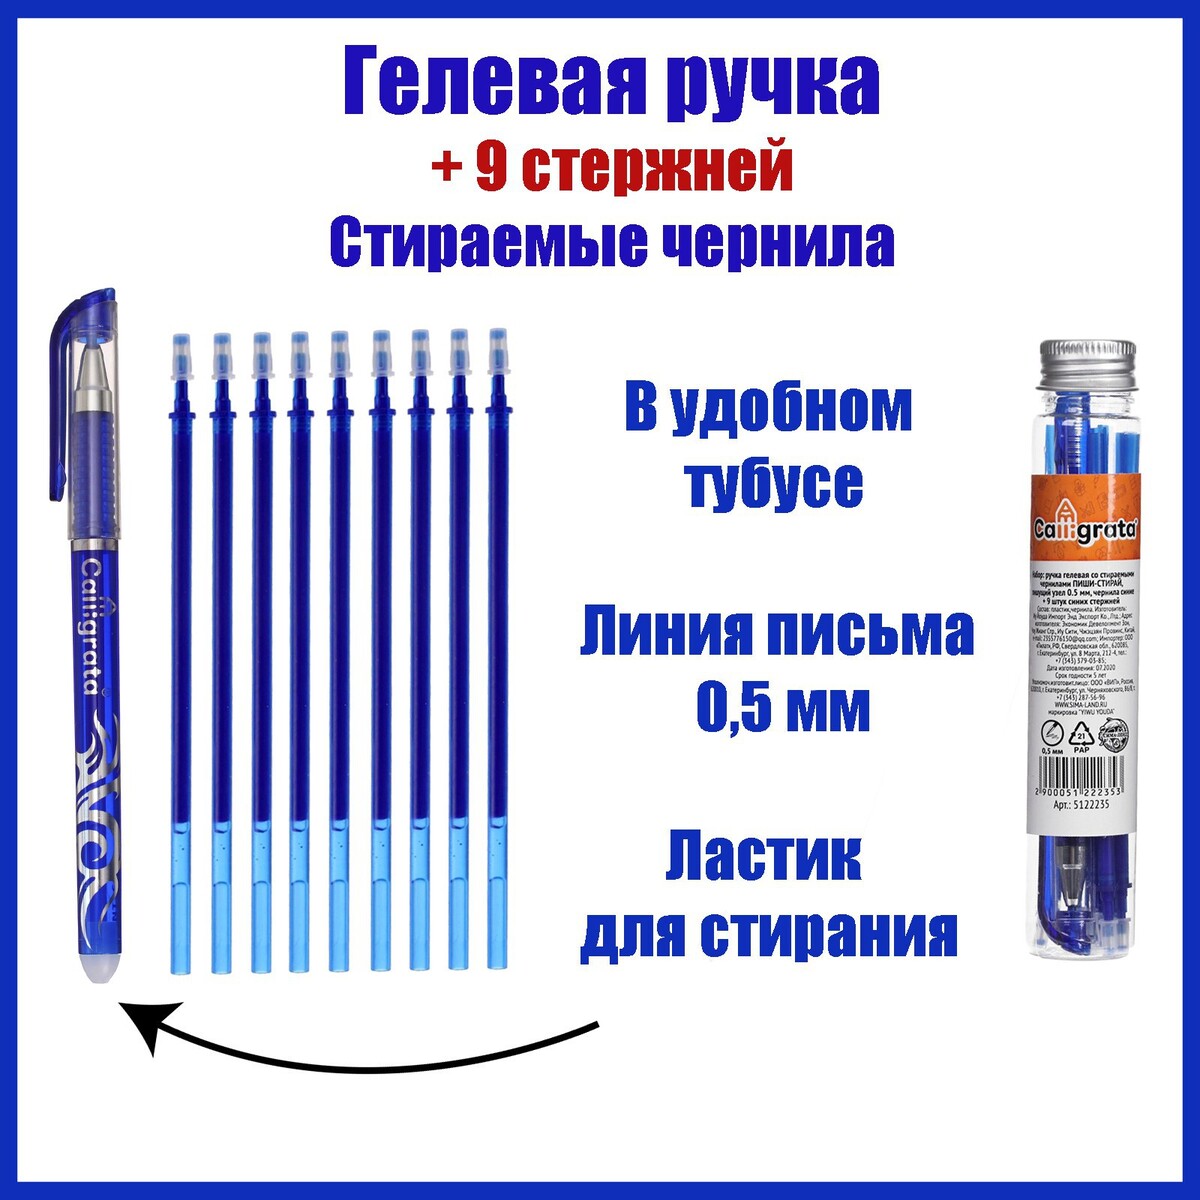 Набор ручка гелевая со стираемыми чернилами, пишущий узел 0.5 мм, чернила синие+9 синих стержней ручка пиши стирай гелевая со стираемыми чернилами 9шт стержней